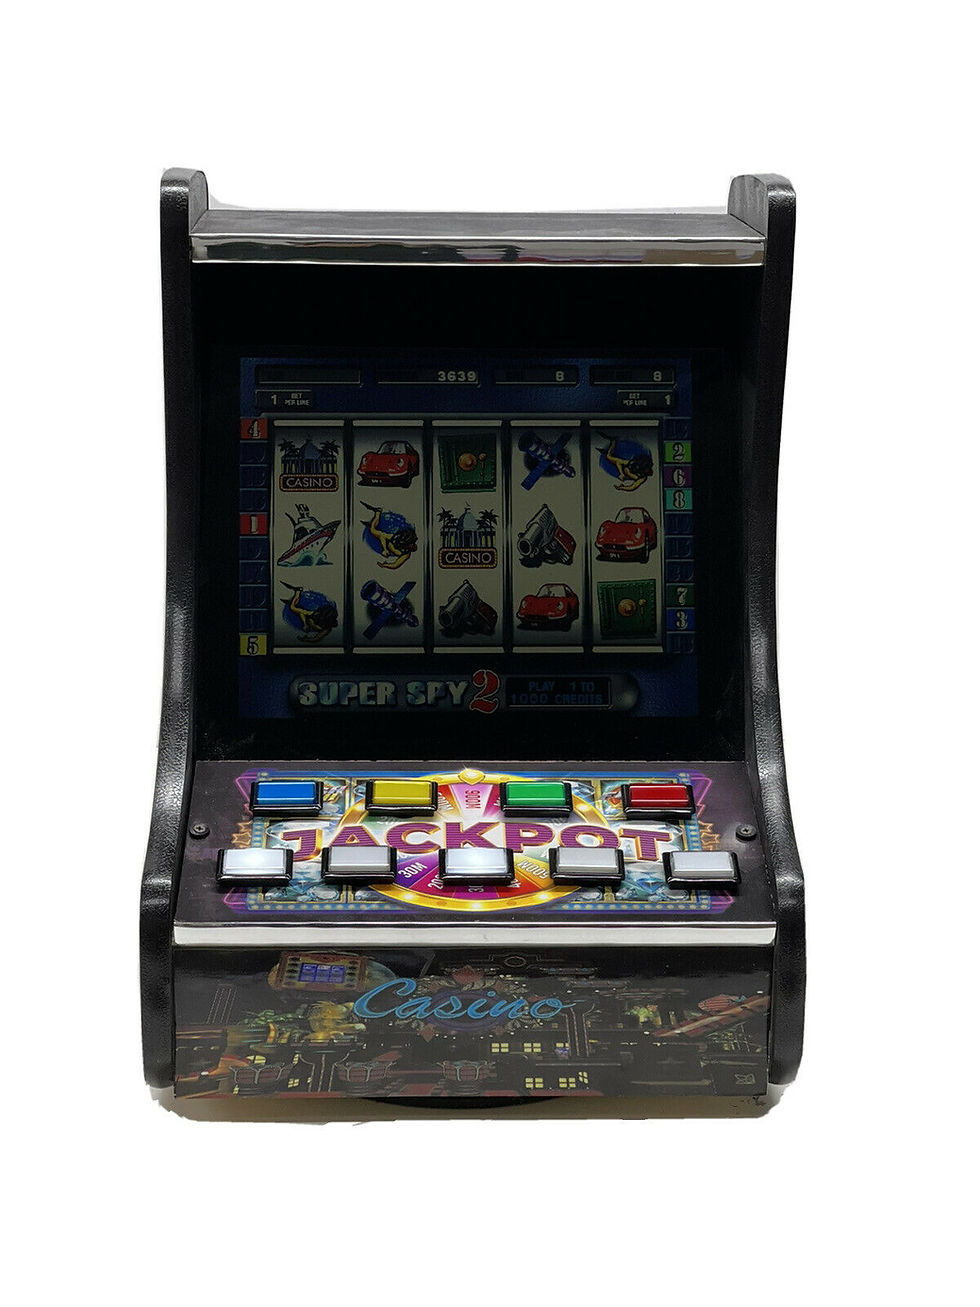 slot machine poker games